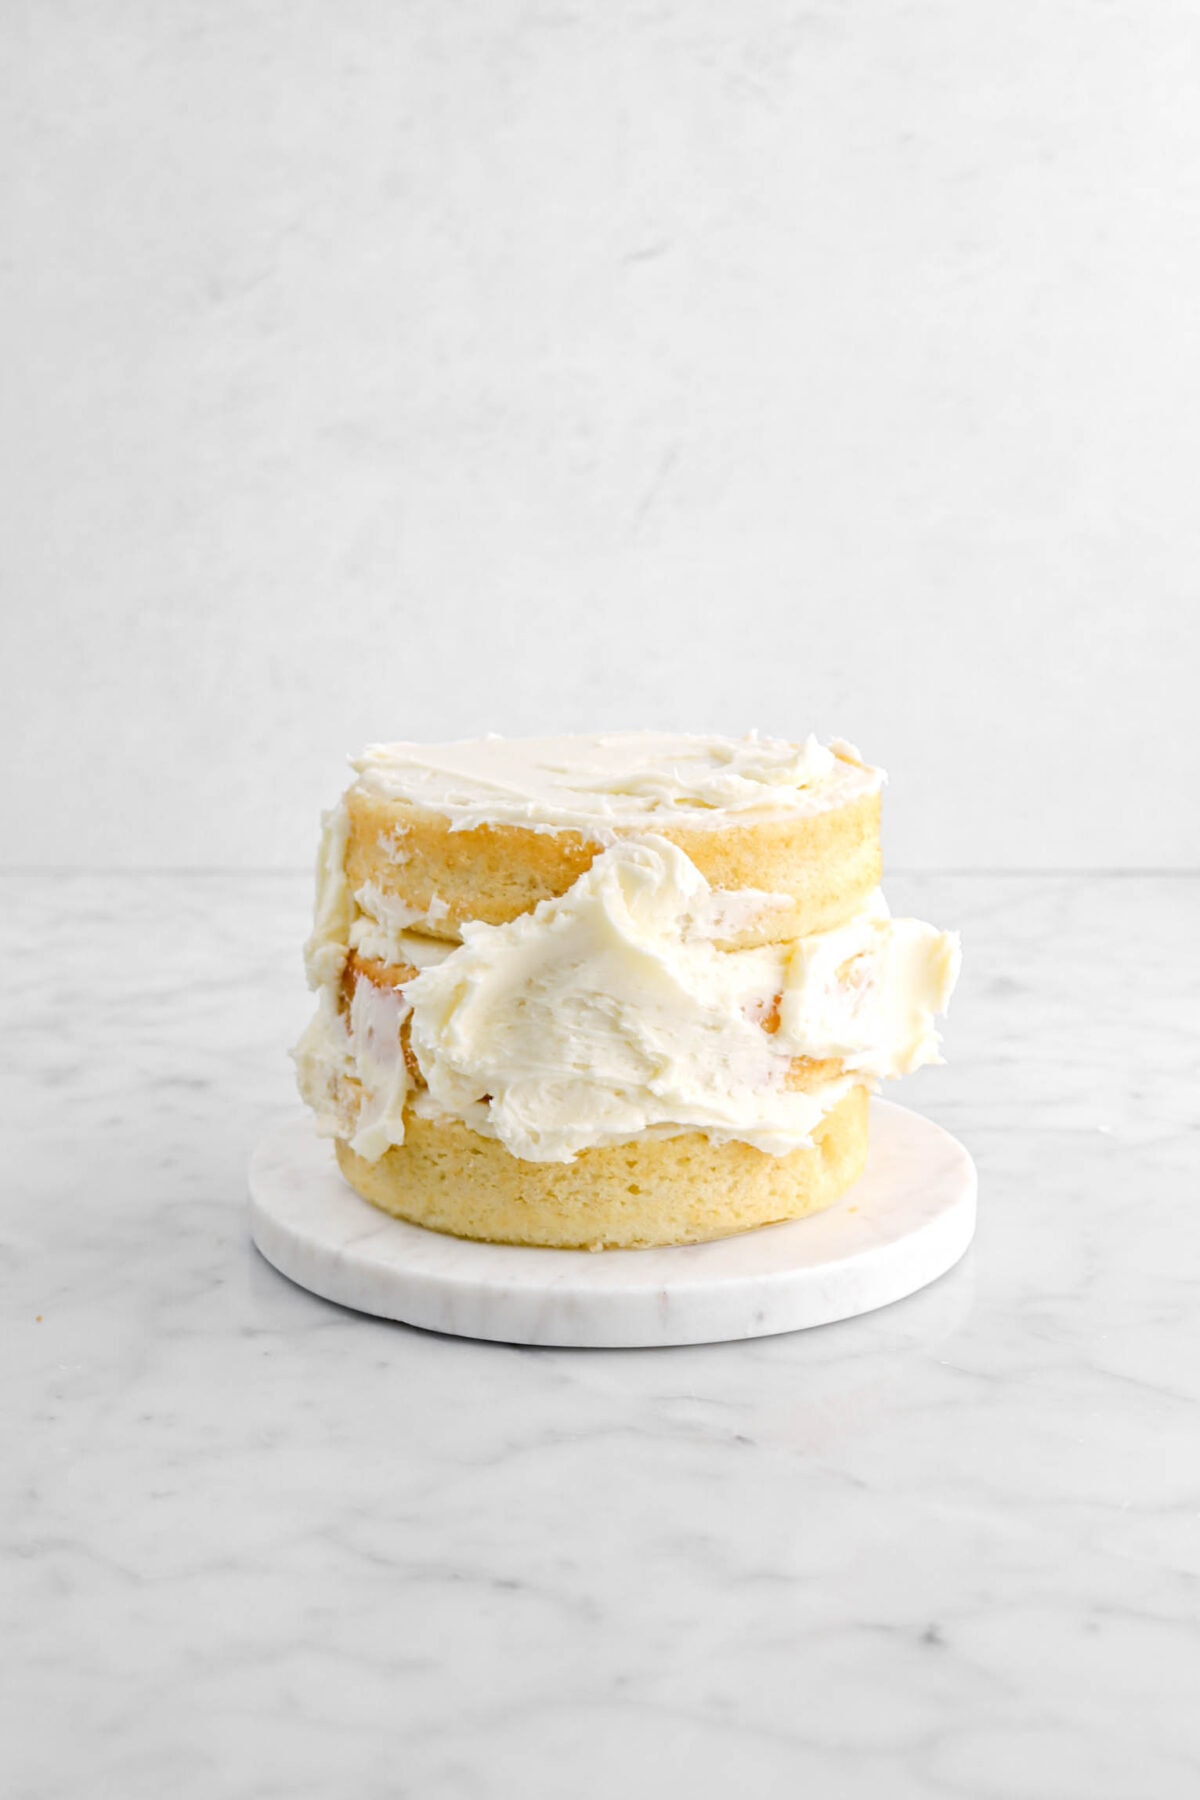 buttercream dolloped onto sides of cake.